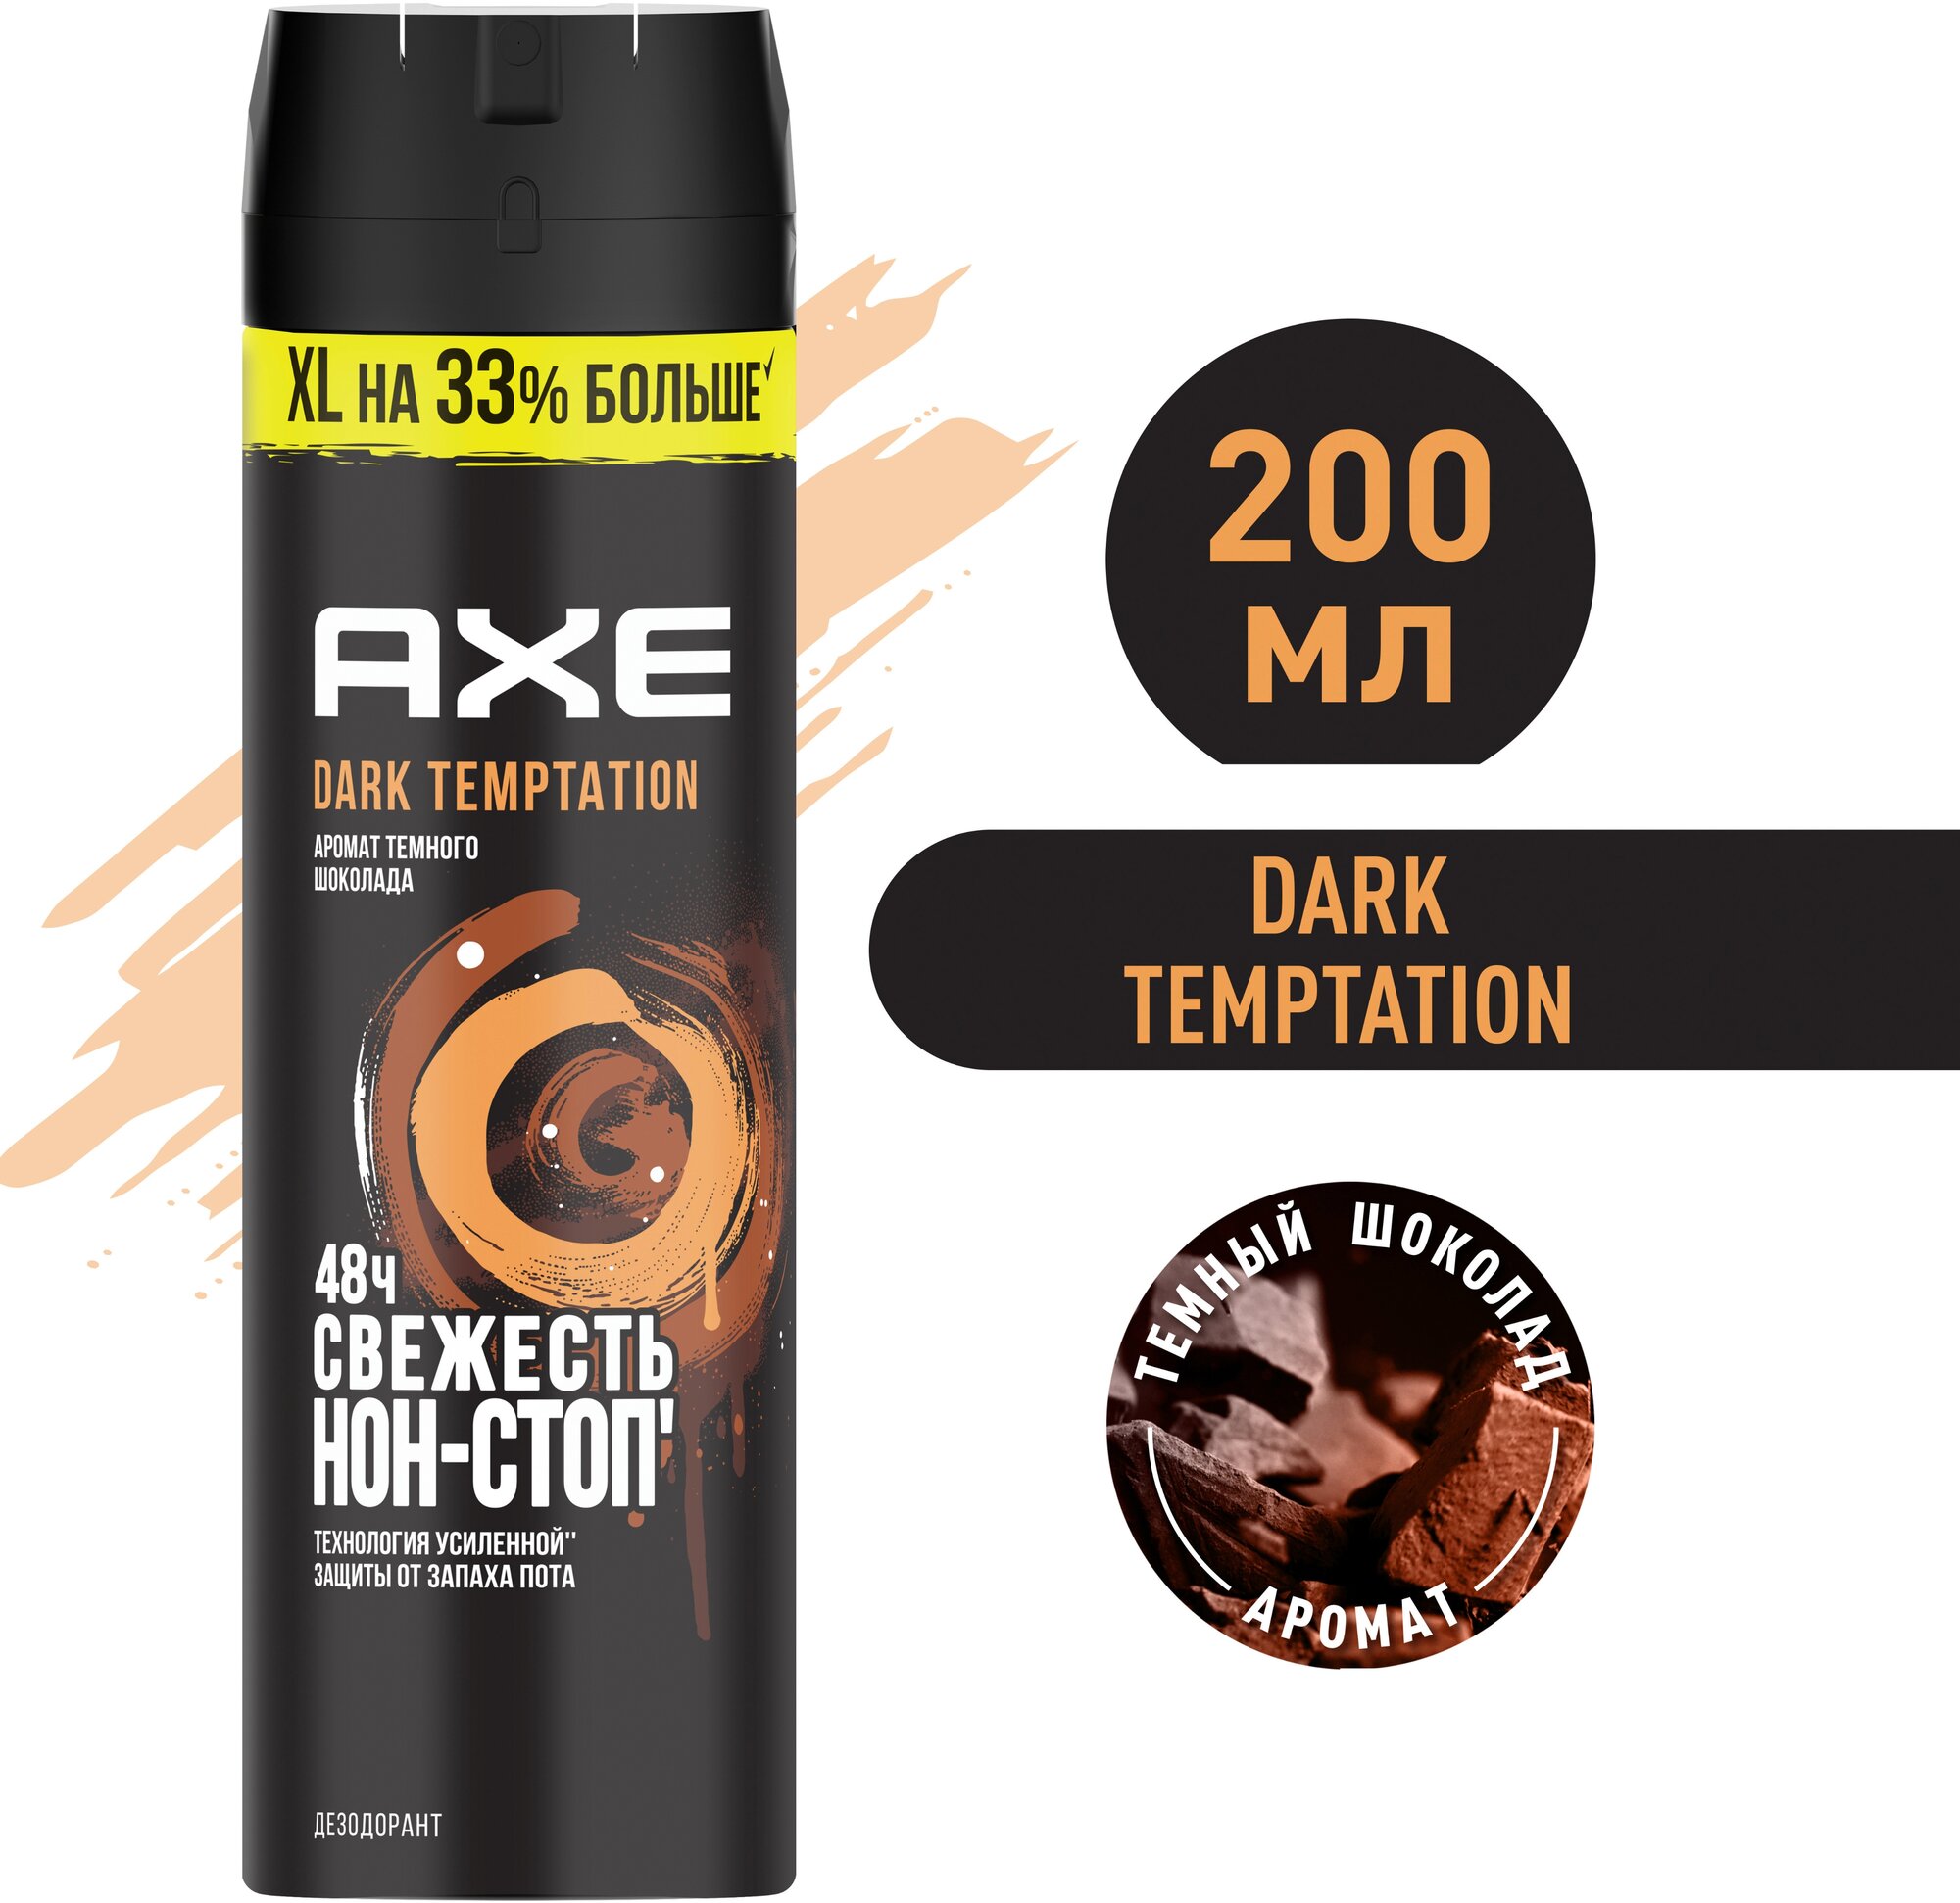 Мужской дезодорант спрей AXE Dark Temptation Тёмный шоколад, XL на 33% больше, 48 часов защиты 200 мл